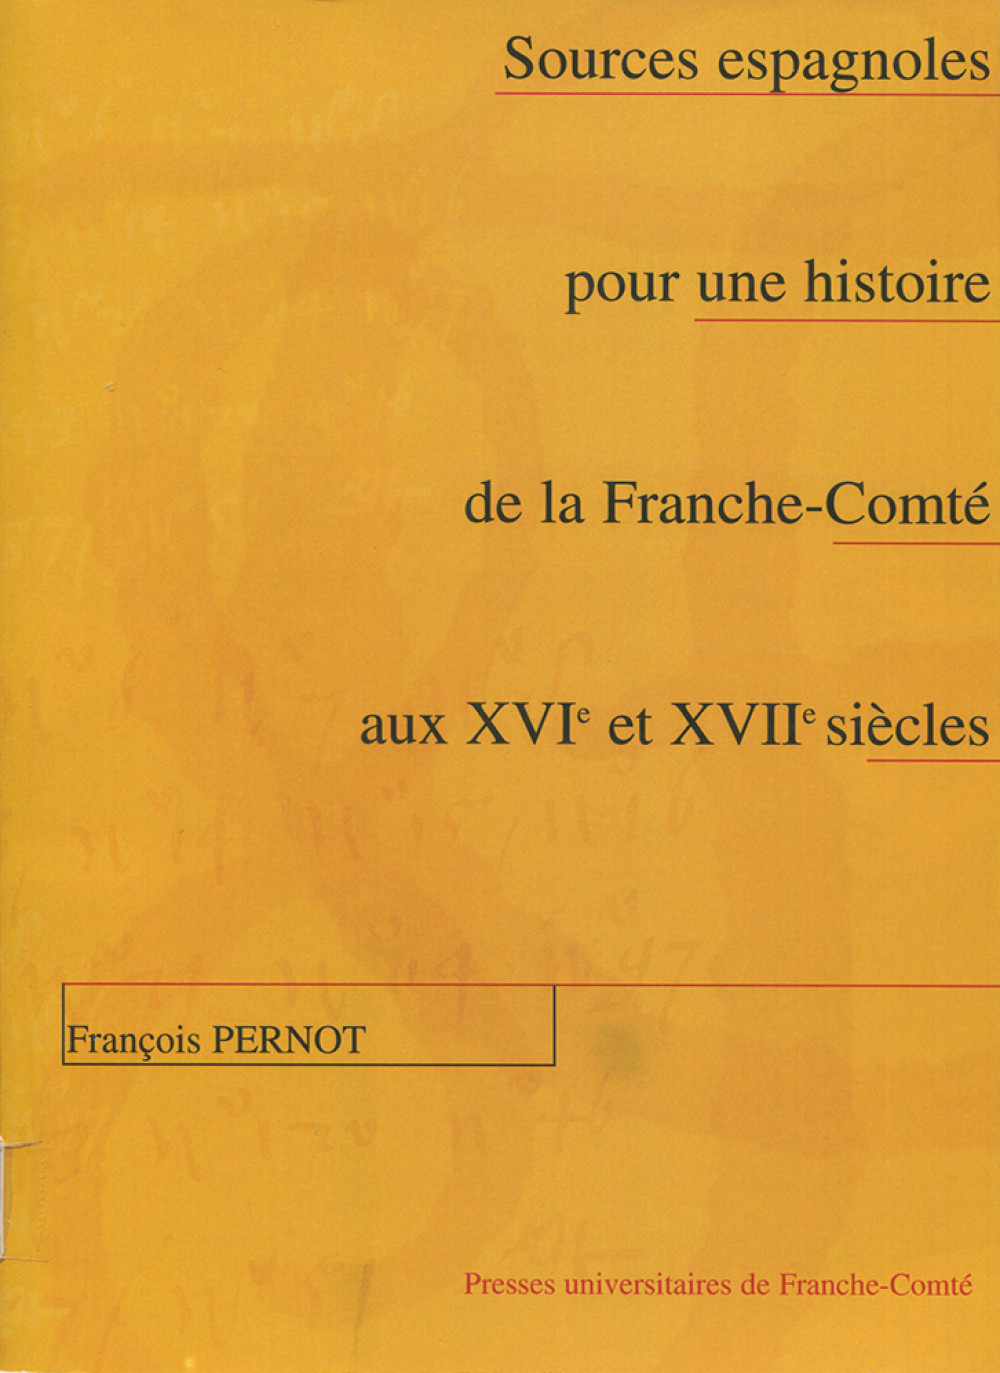 Sources espagnoles pour une histoire de la Franche-Comté aux XVIe et XVIIe siècles. 2ème édition